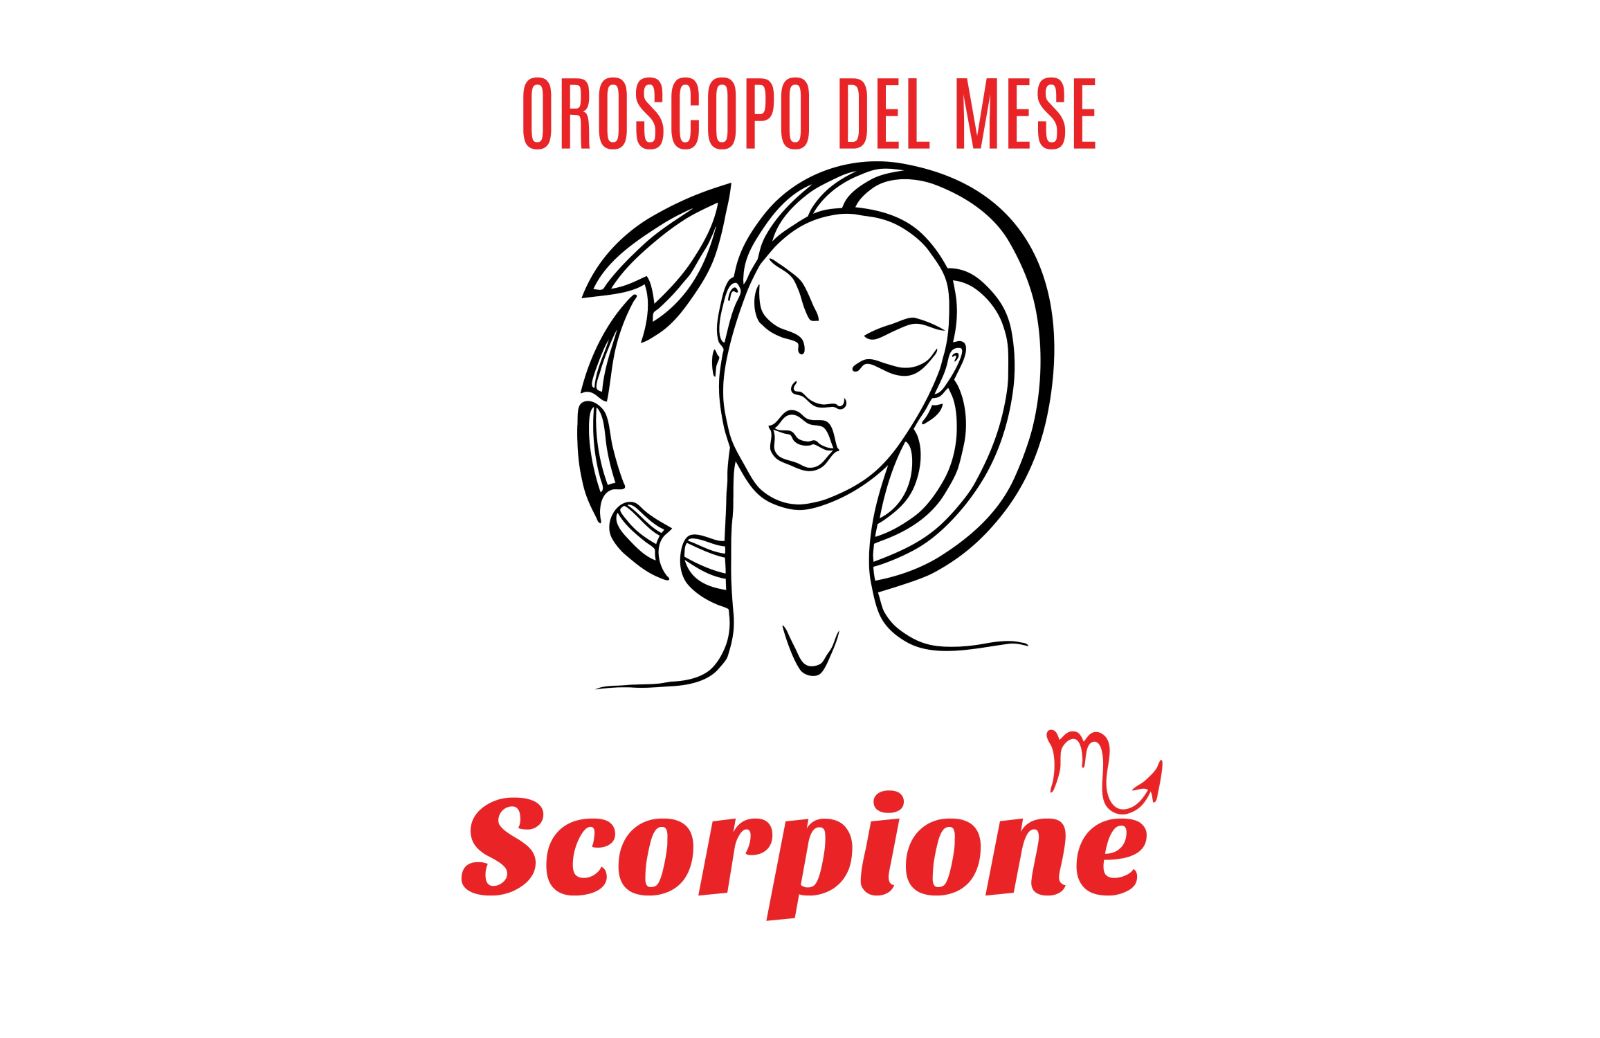 Oroscopo del mese: Scorpione - giugno 2020